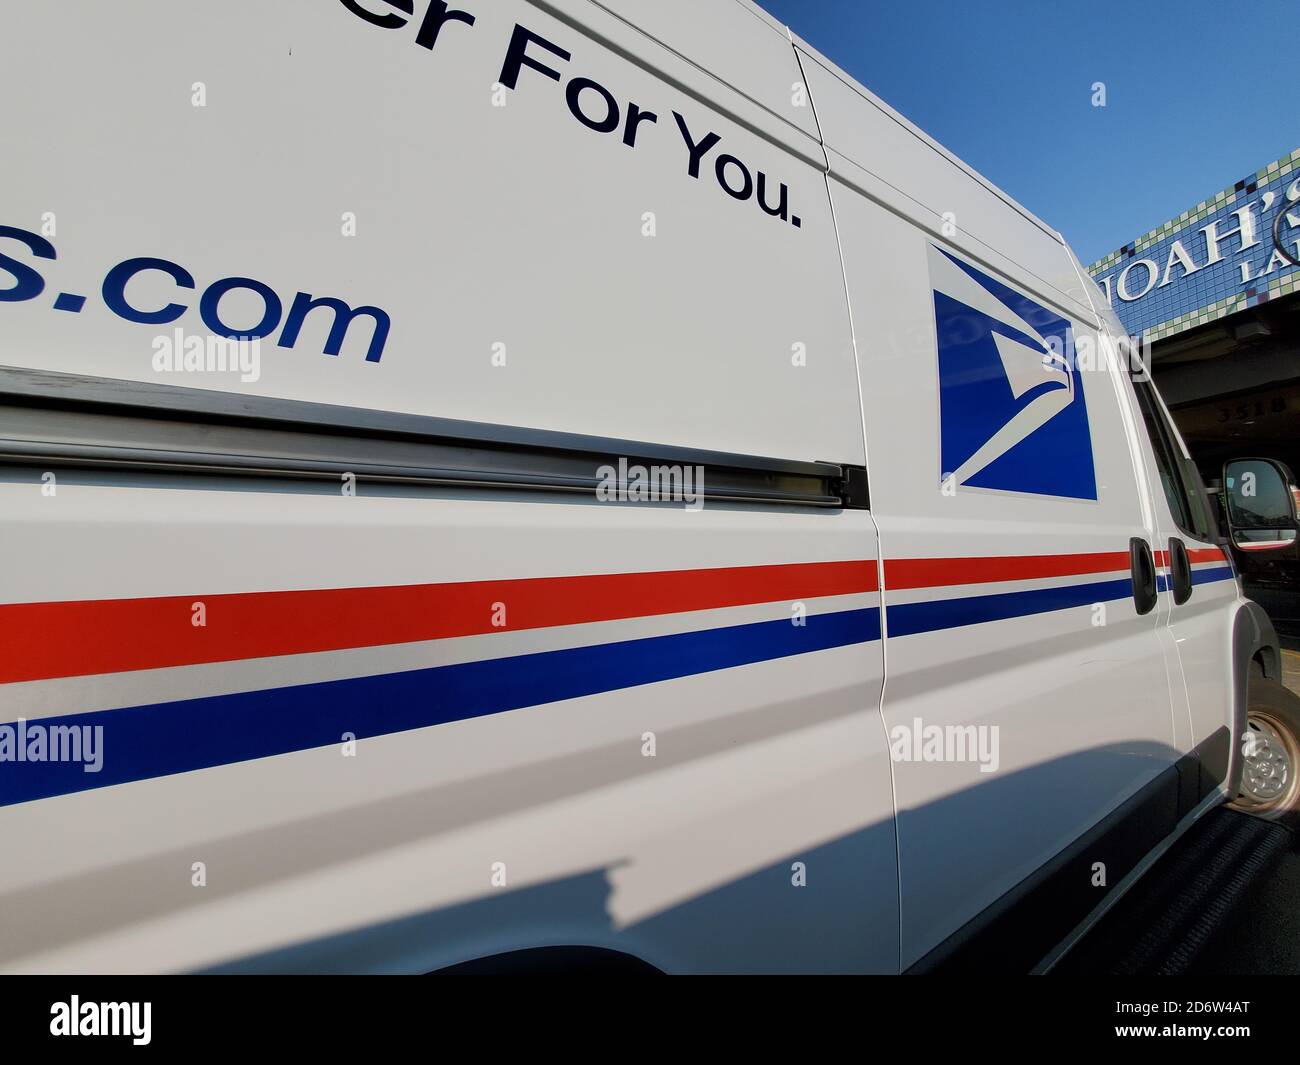 Vista grandangolare del logo sul camion USPS (United States Postal Service), Lafayette, California, 17 settembre 2020. () Foto Stock